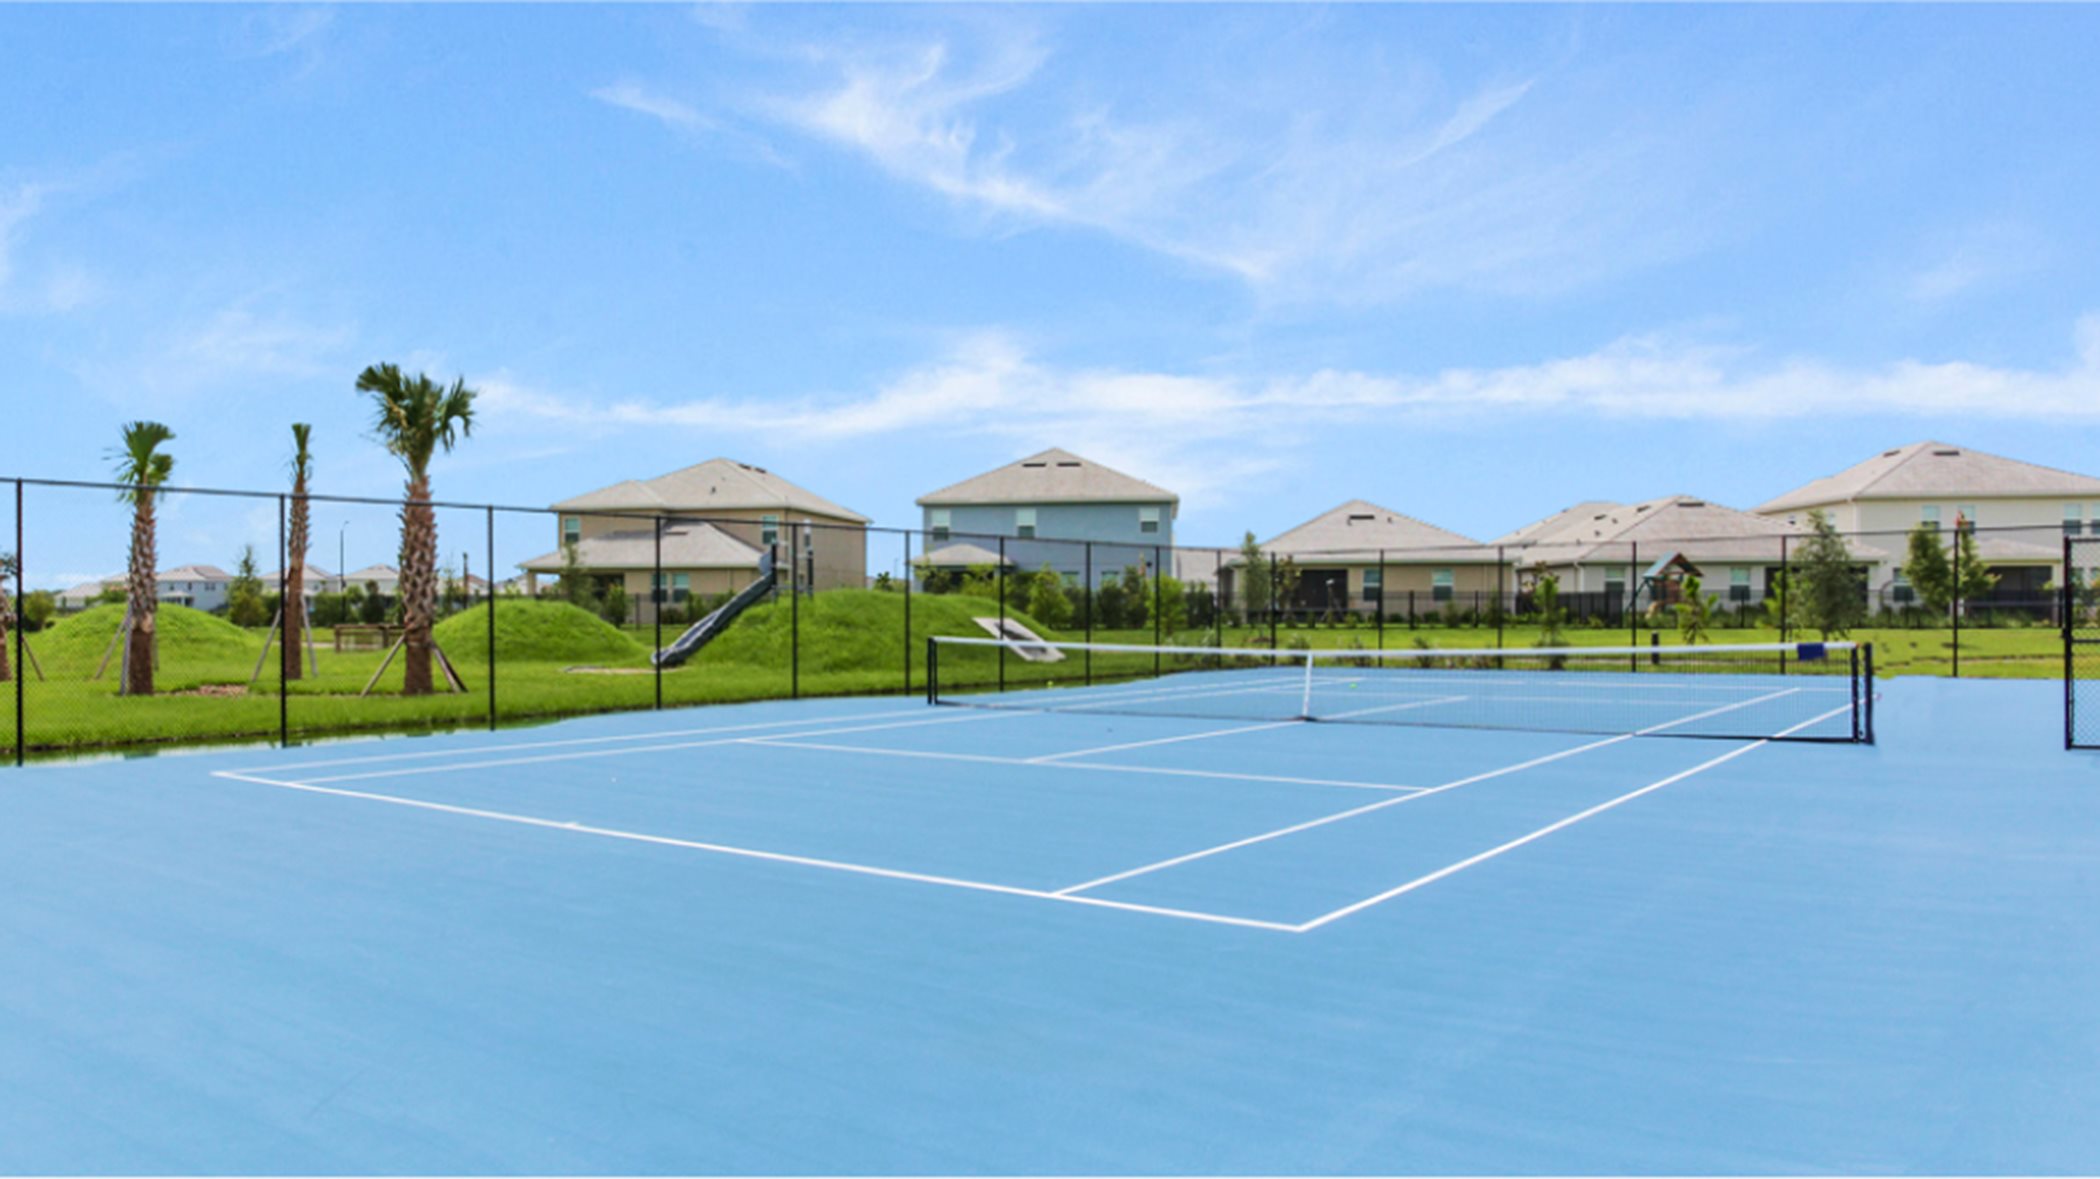 Storey Park tennis court